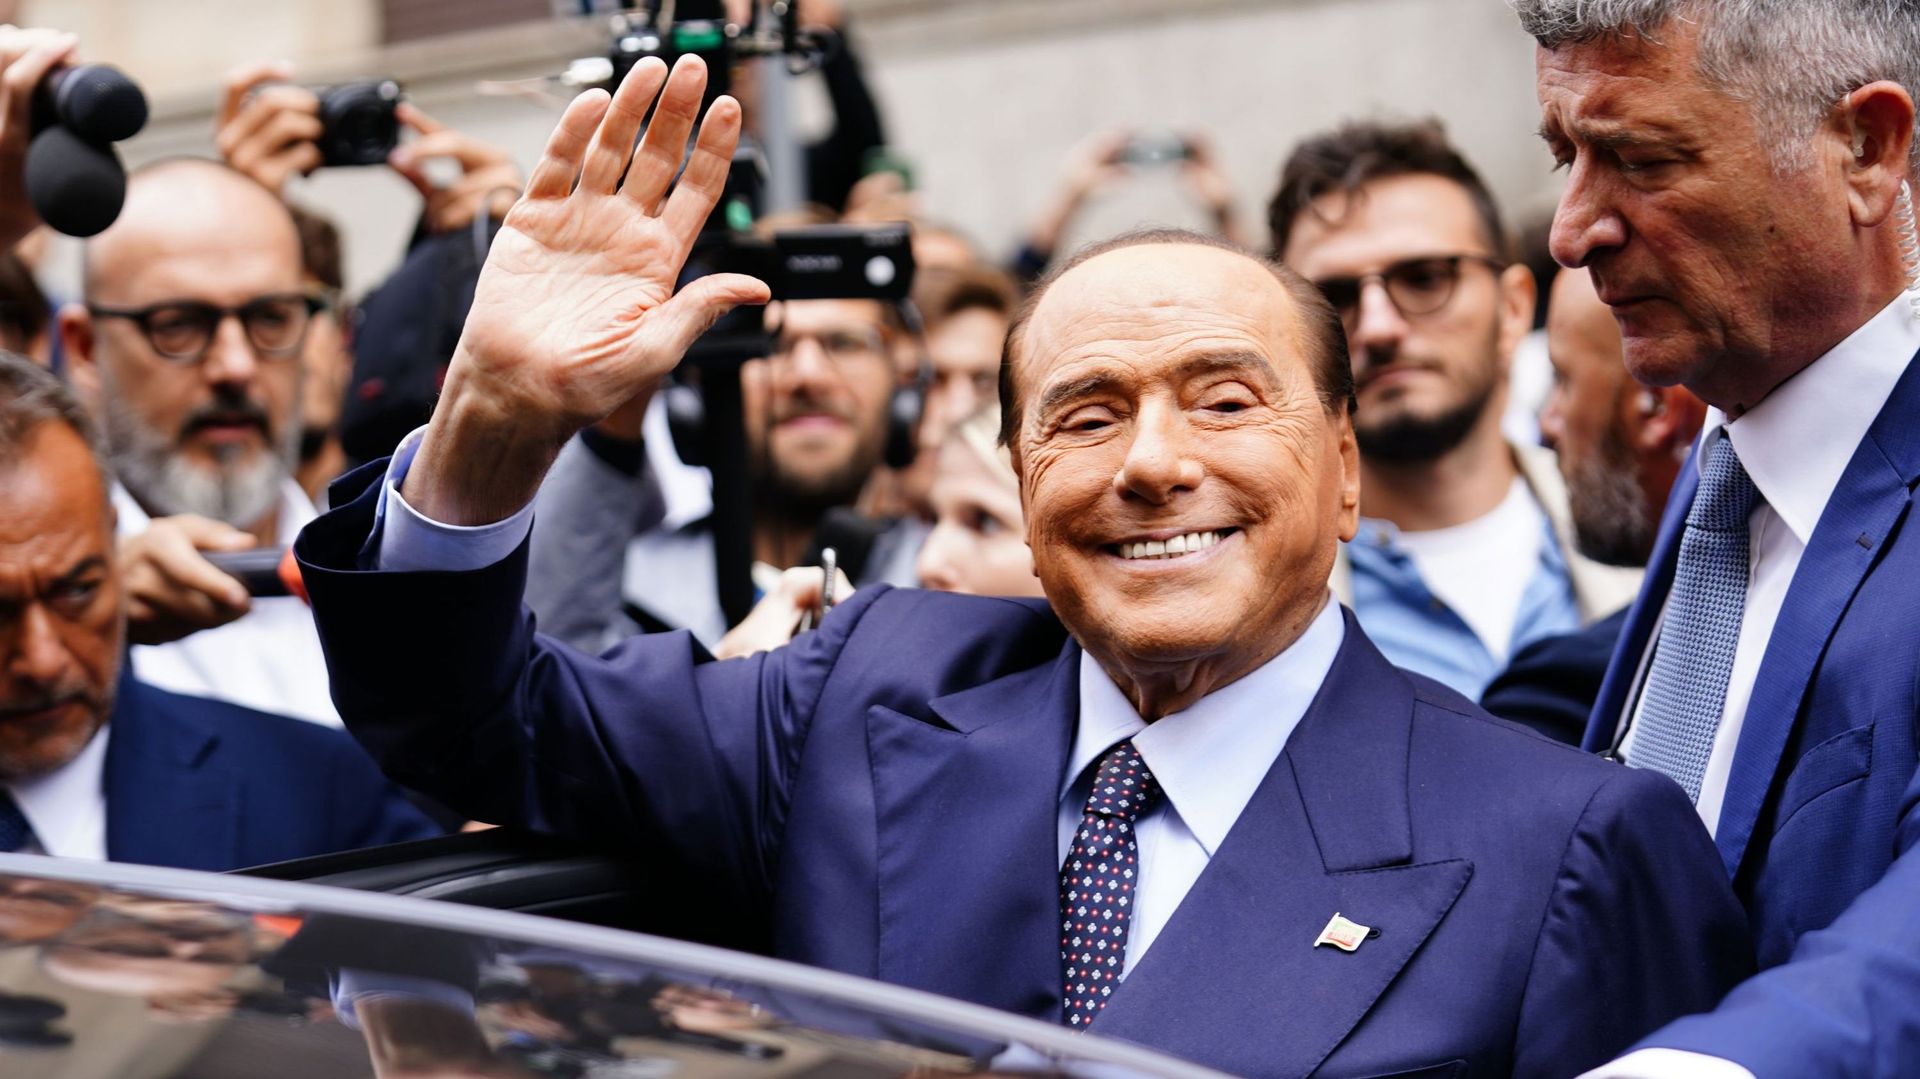 Silvio Berlusconi, Il potere nella pelle: muore a 86 anni l’ex presidente del Consiglio italiano